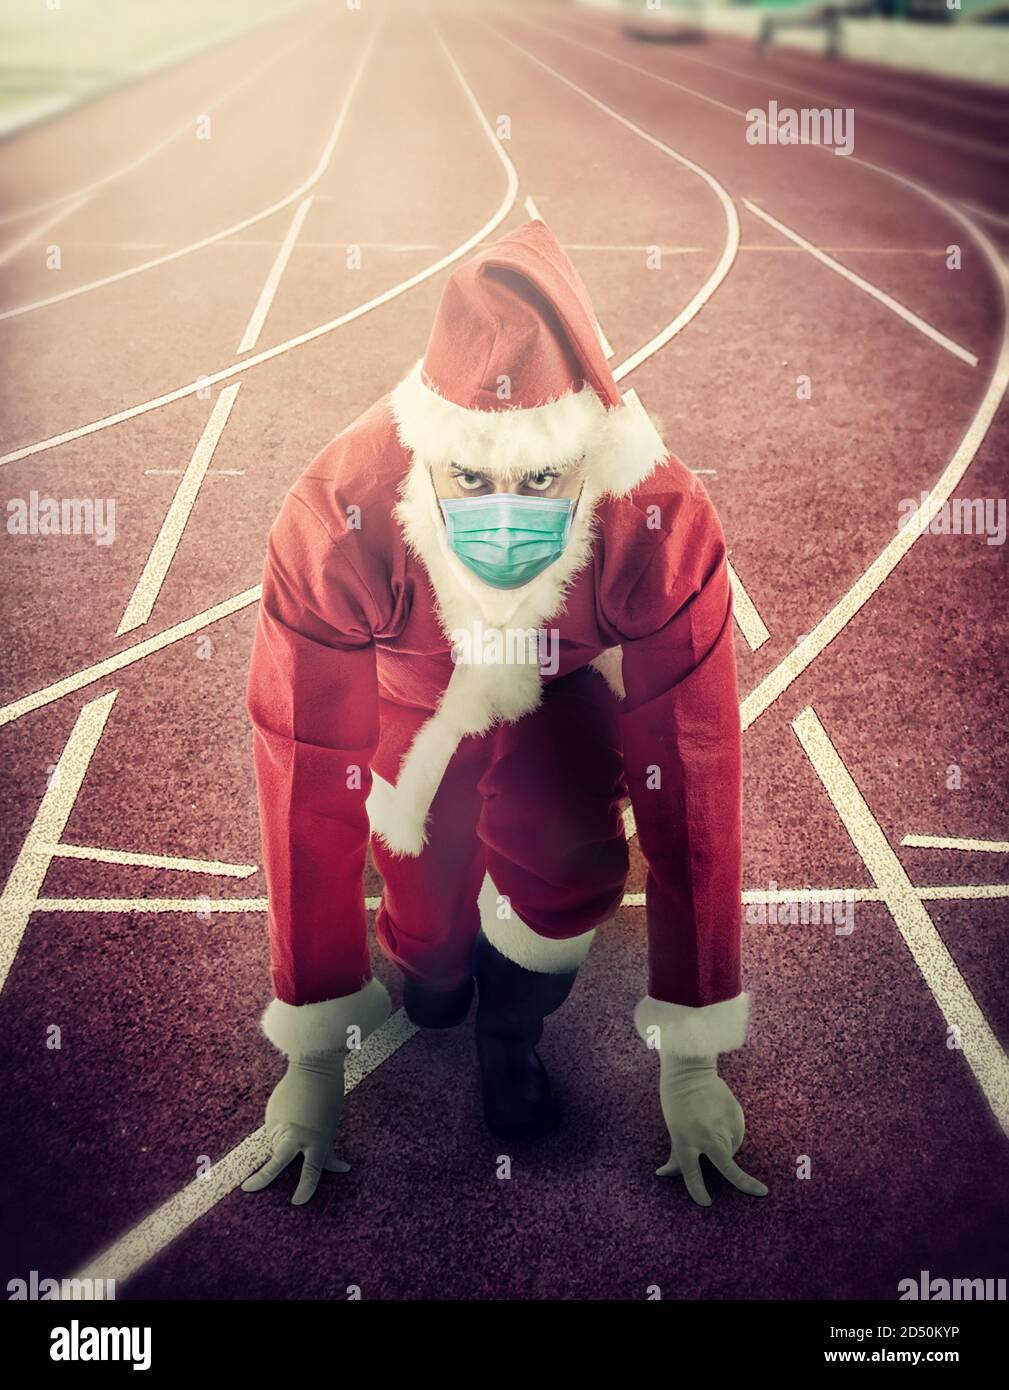 Le Père Noël est en position de départ sur une piste de course portant le masque chirurgical. Banque D'Images